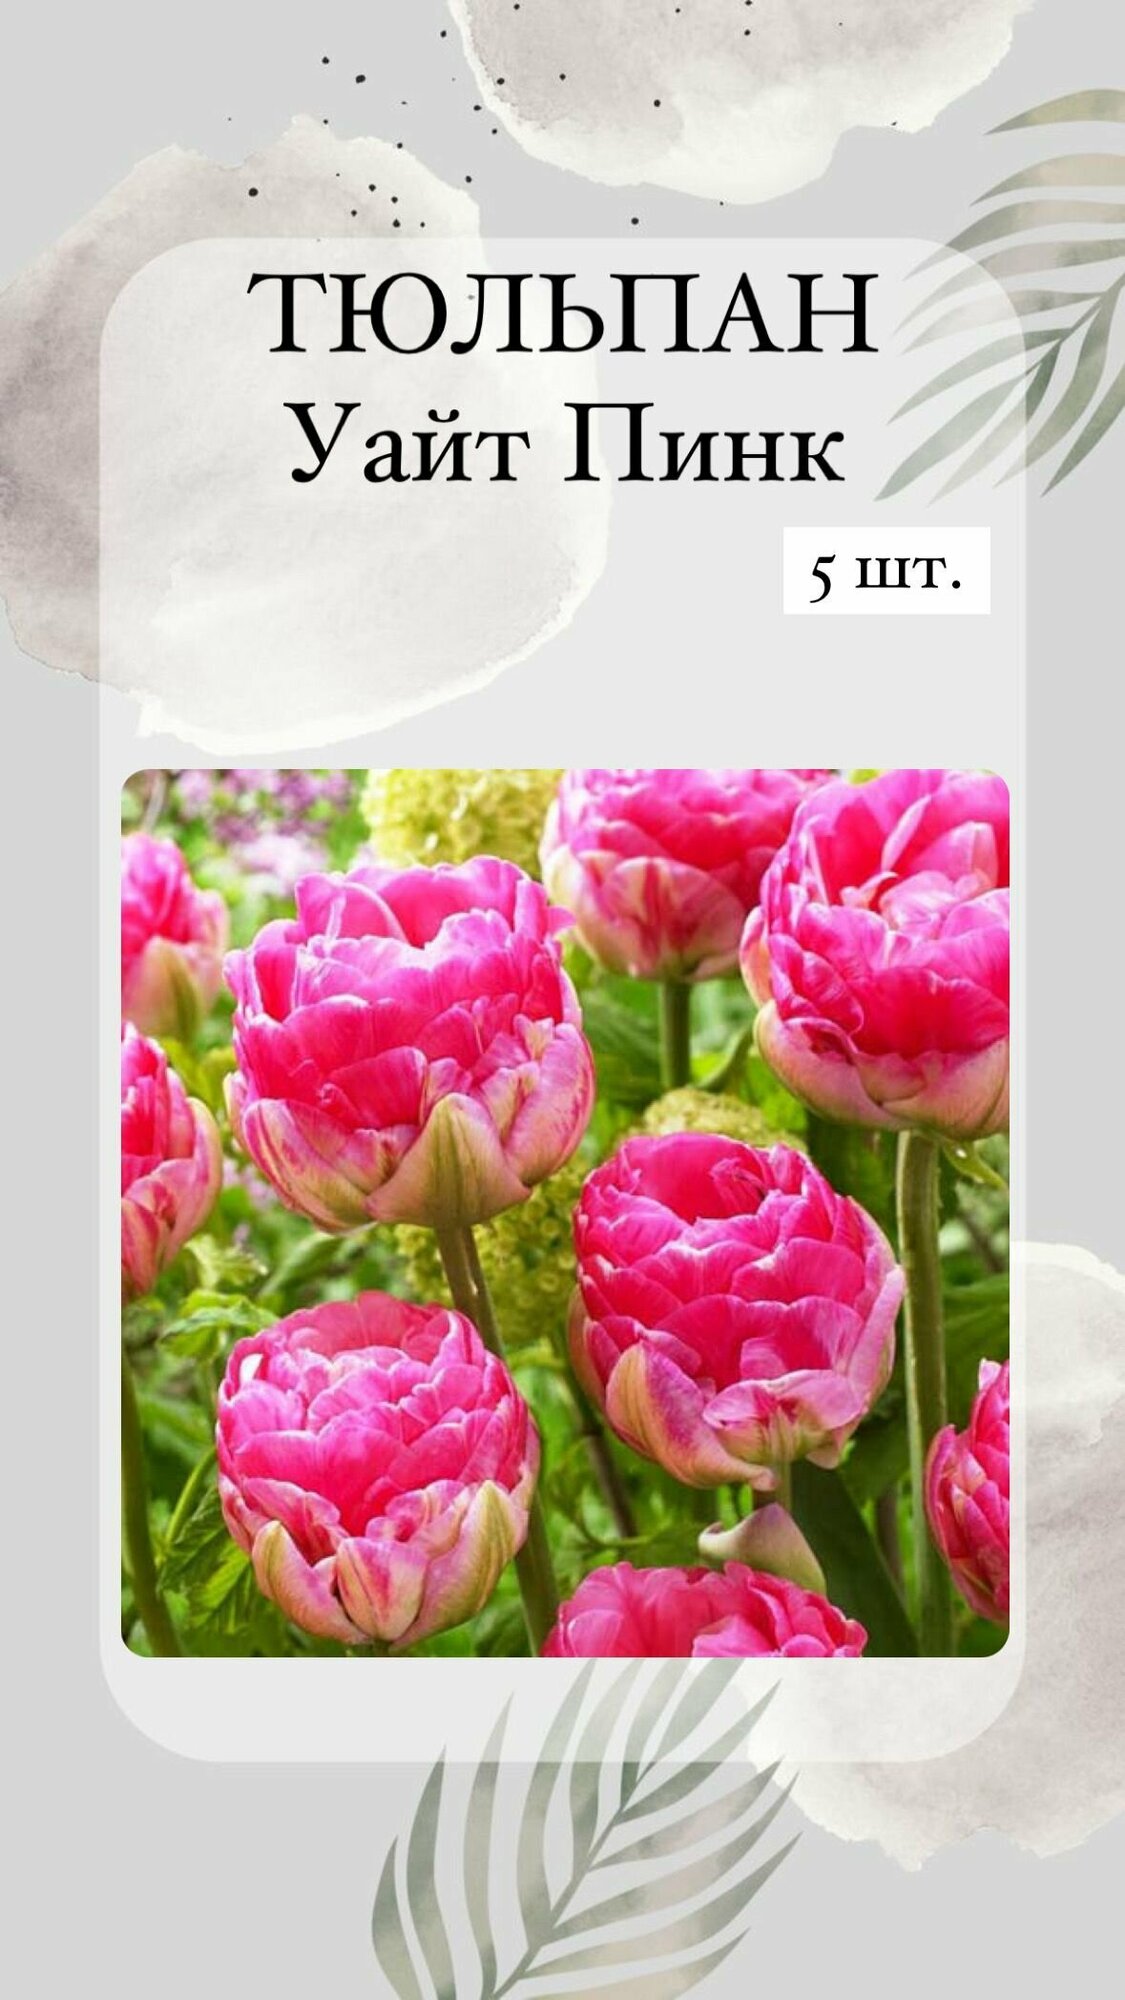 Тюльпаны луковичные цветы 5 шт